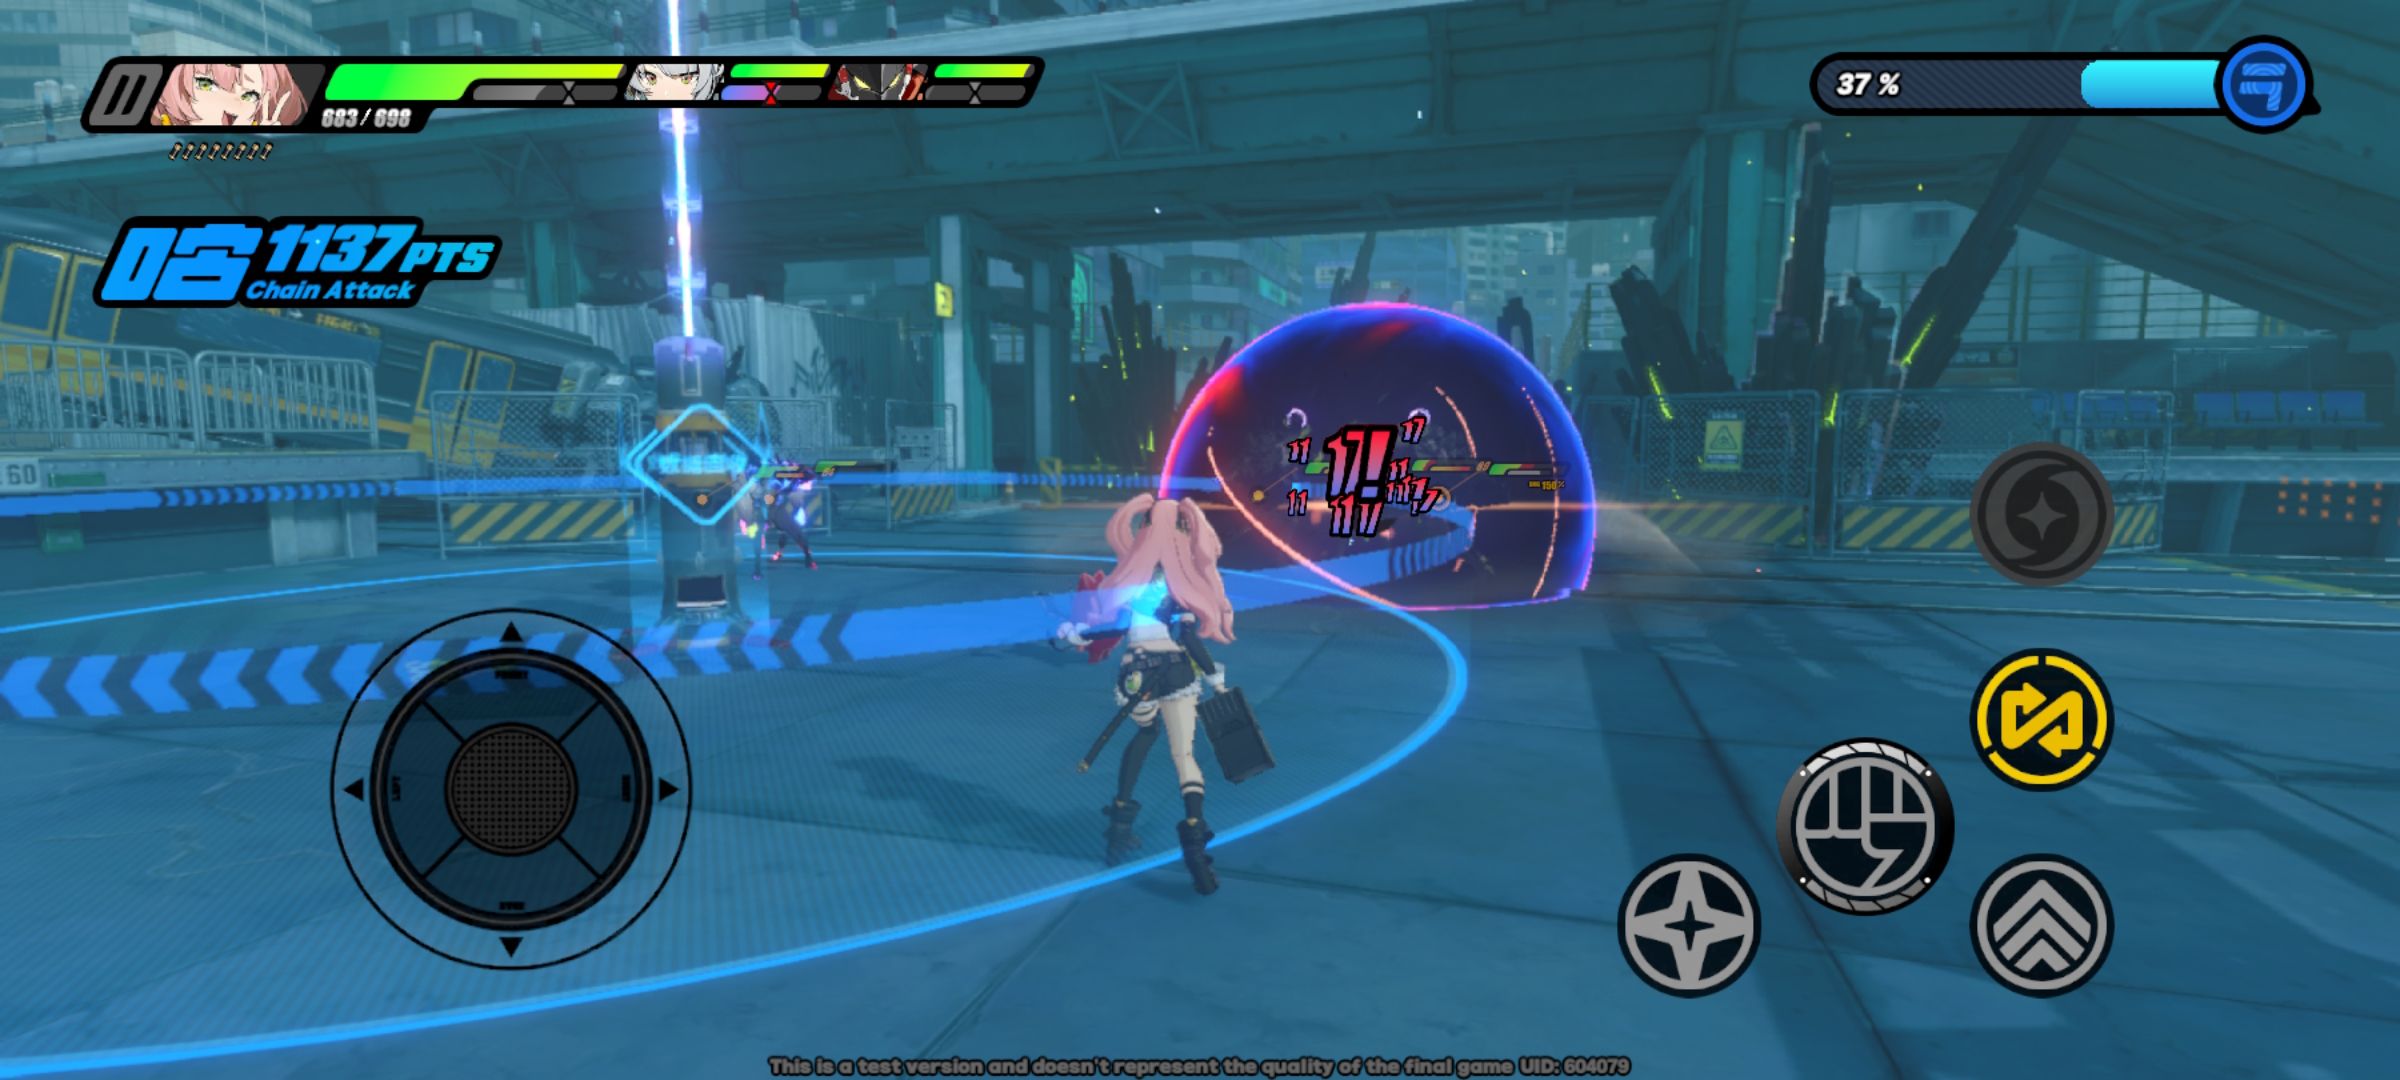 captura de tela do combate na zona zenless zero com exibição da interface do botão